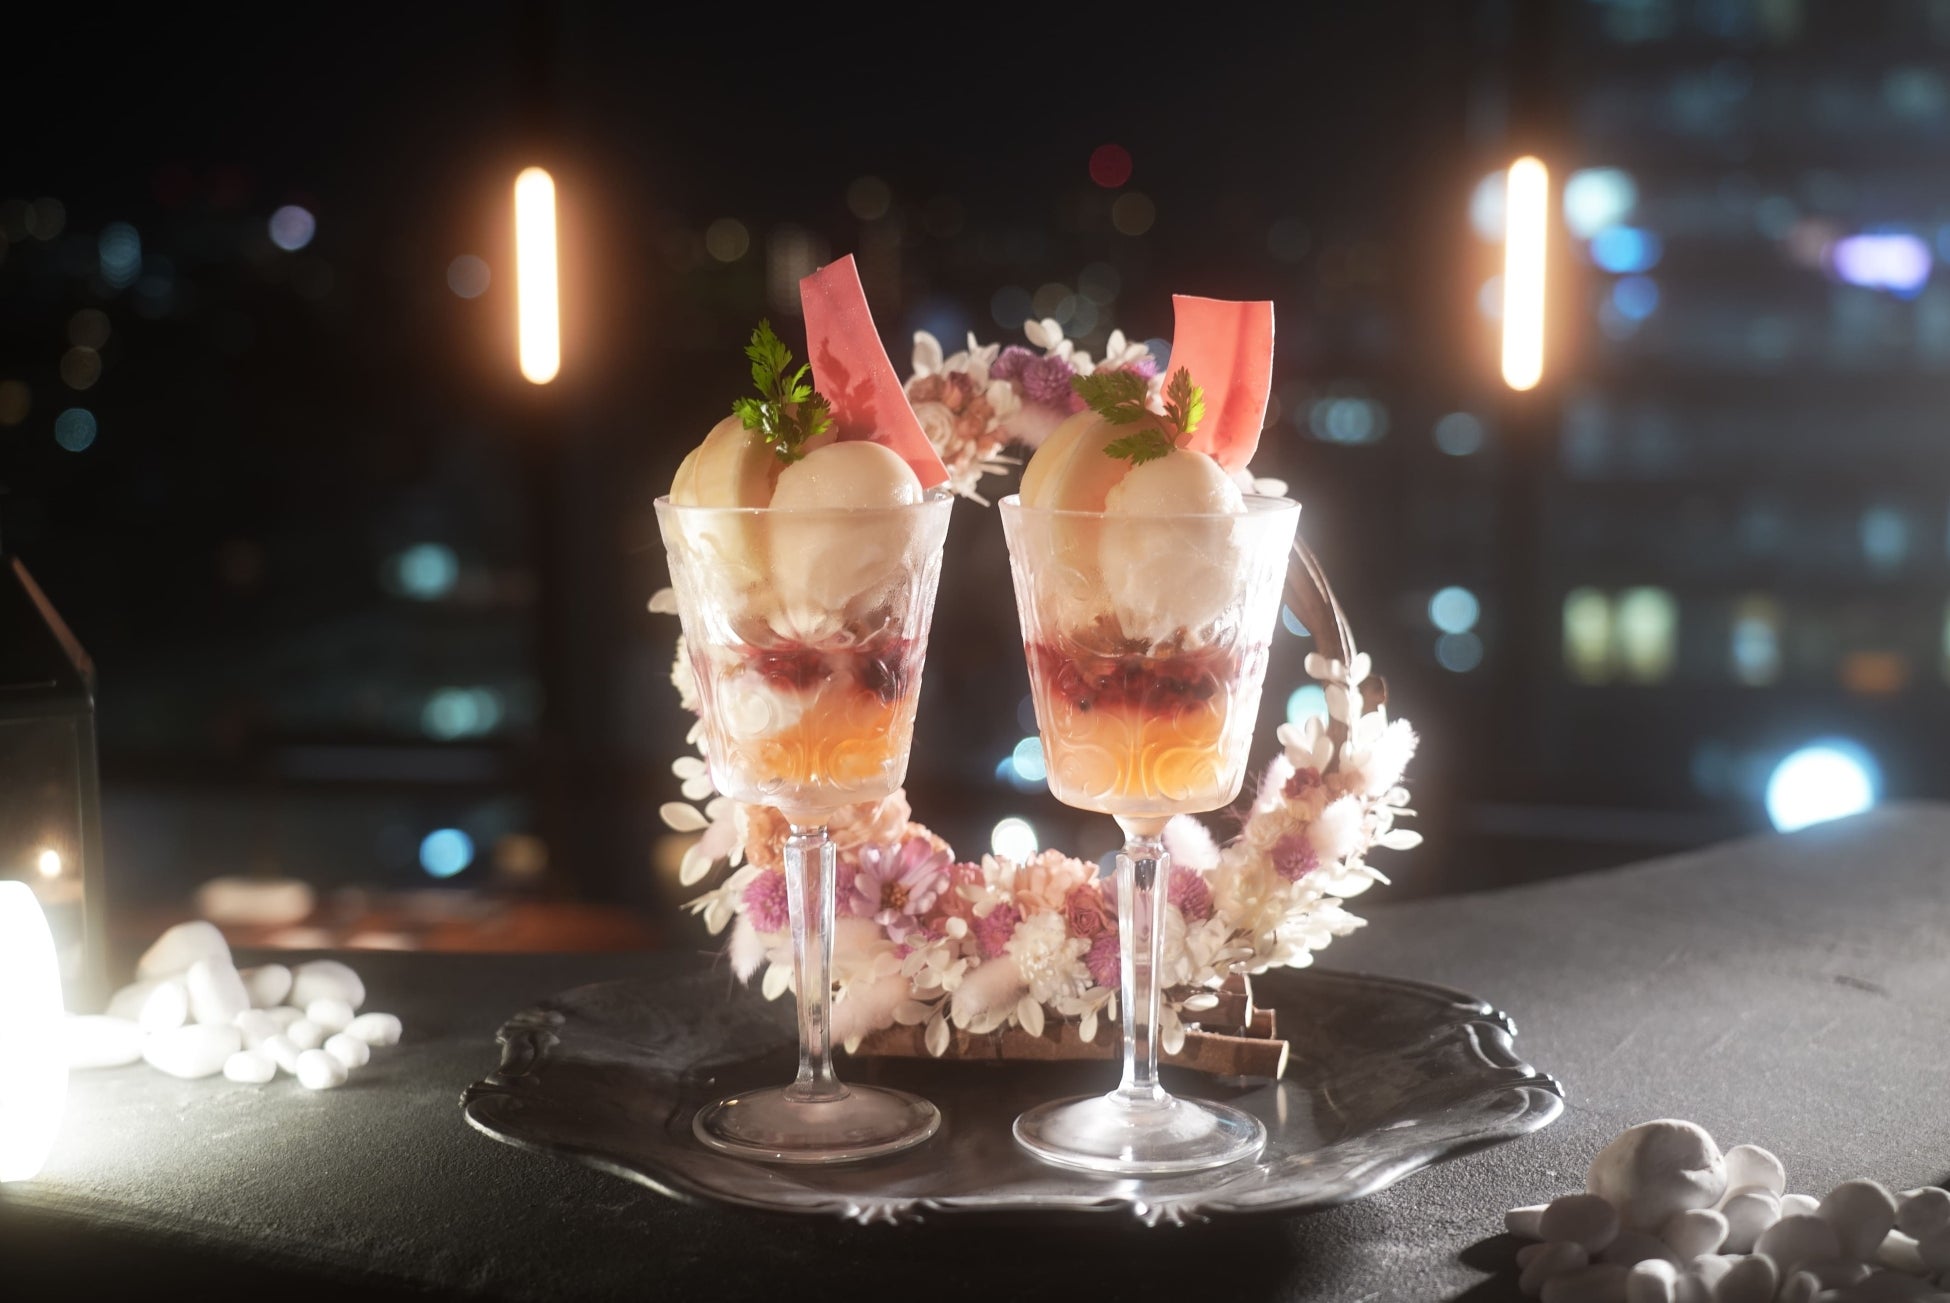 21時以降限定 “夜の桃パフェ”。2名専用スカイレストラン渋谷ブルーバードから『夜パフェ ペアリングプラン』が7月29日より、スイーツインフルエンサーとの期間限定コラボレーションとして販売開始。